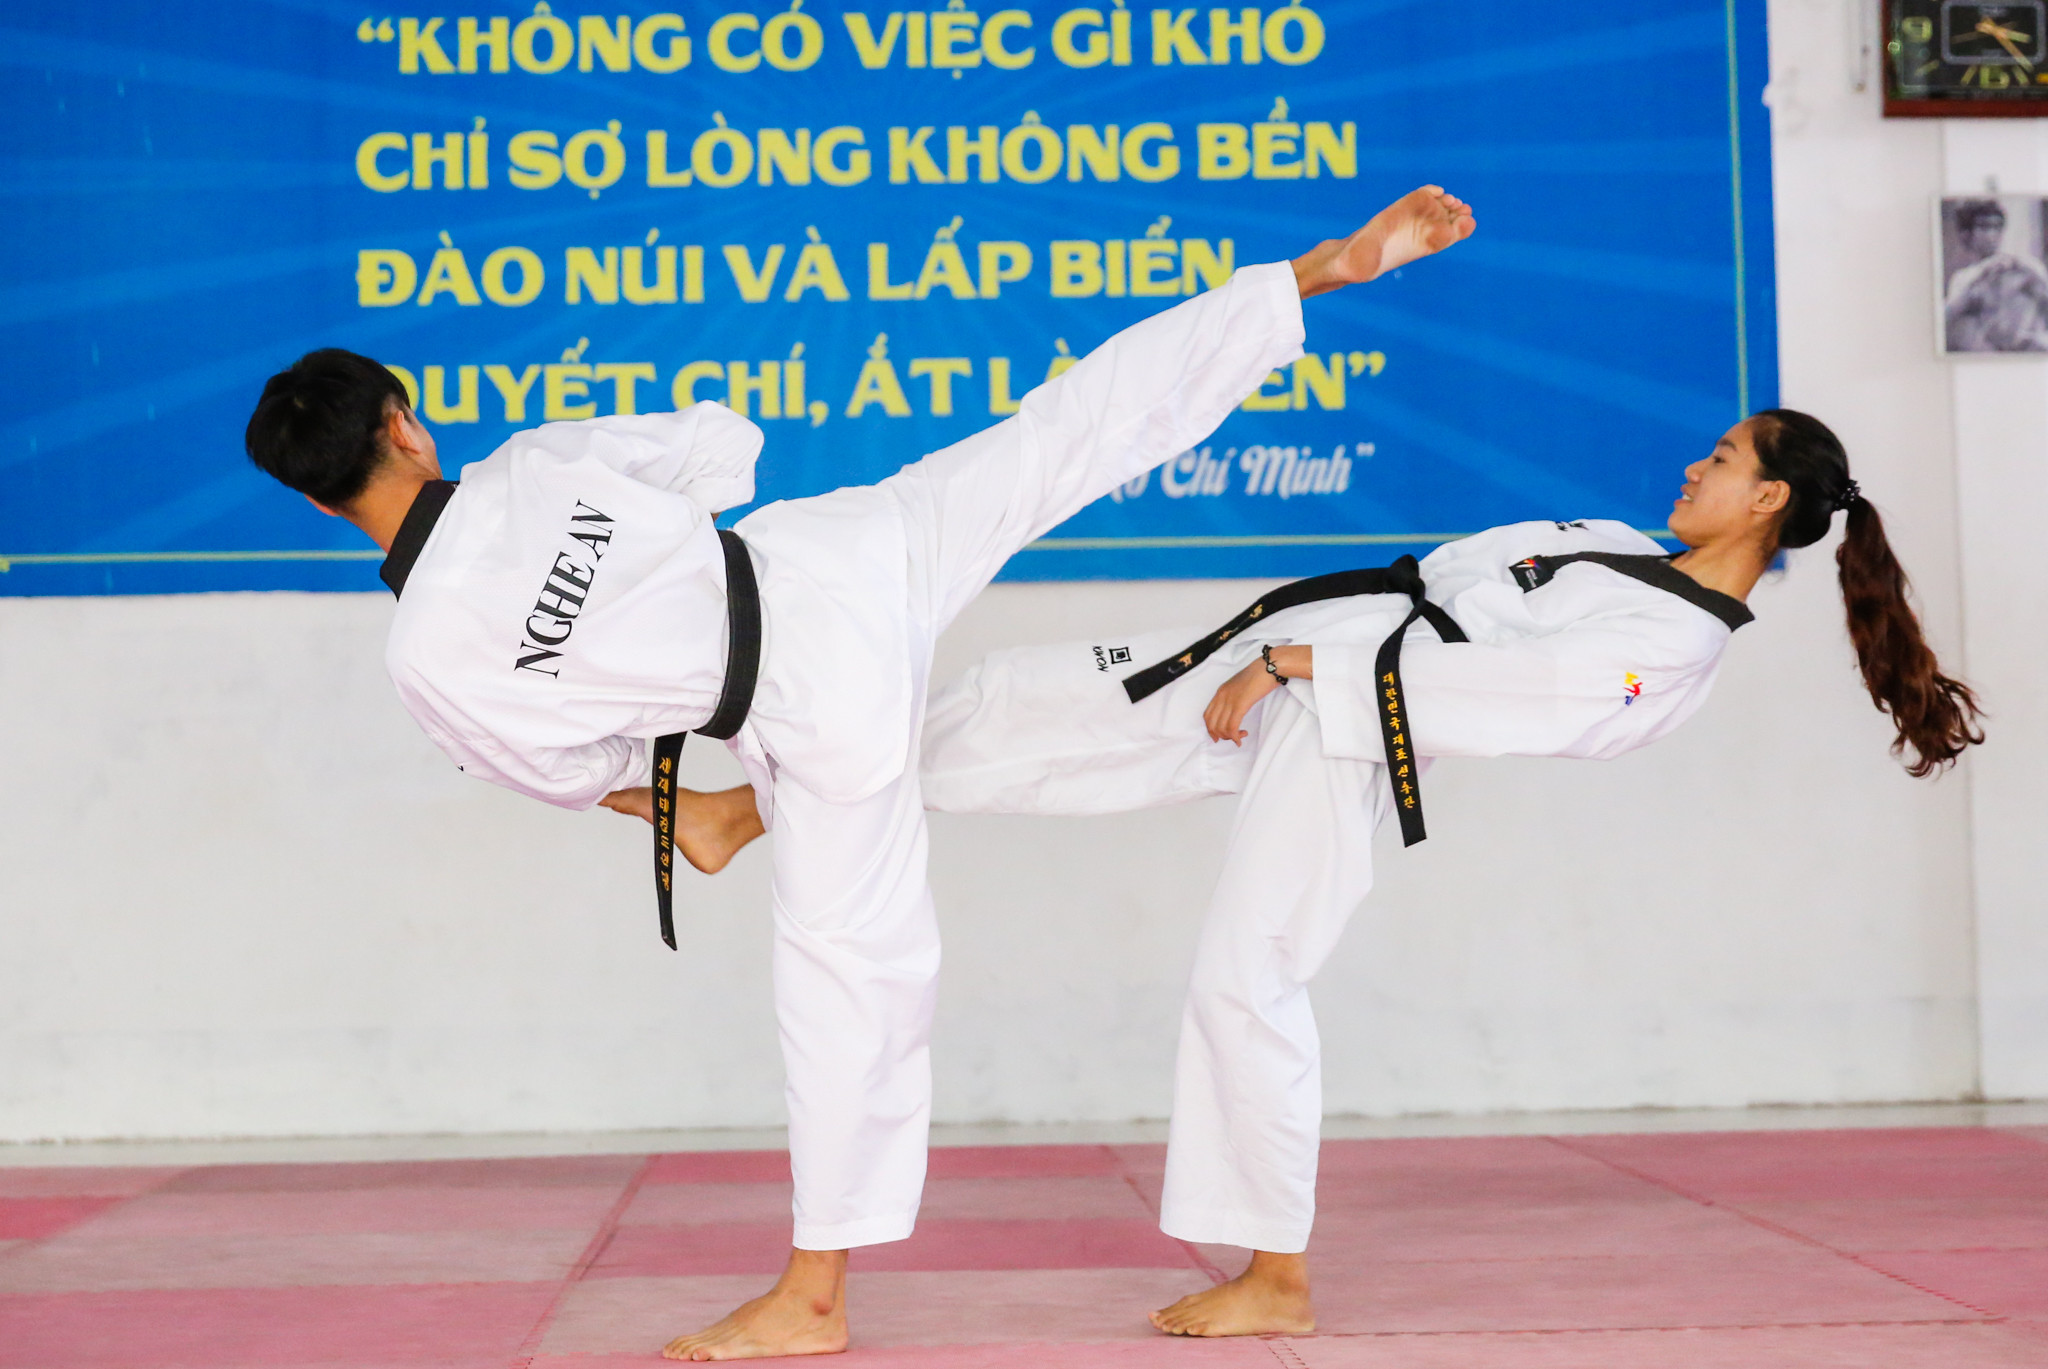 VĐV Nguyễn Thị Thu Hoài đang cùng đồng đội tập luyện những động tác khó trong môn võ Taekwondo. Ảnh: Đức Anh